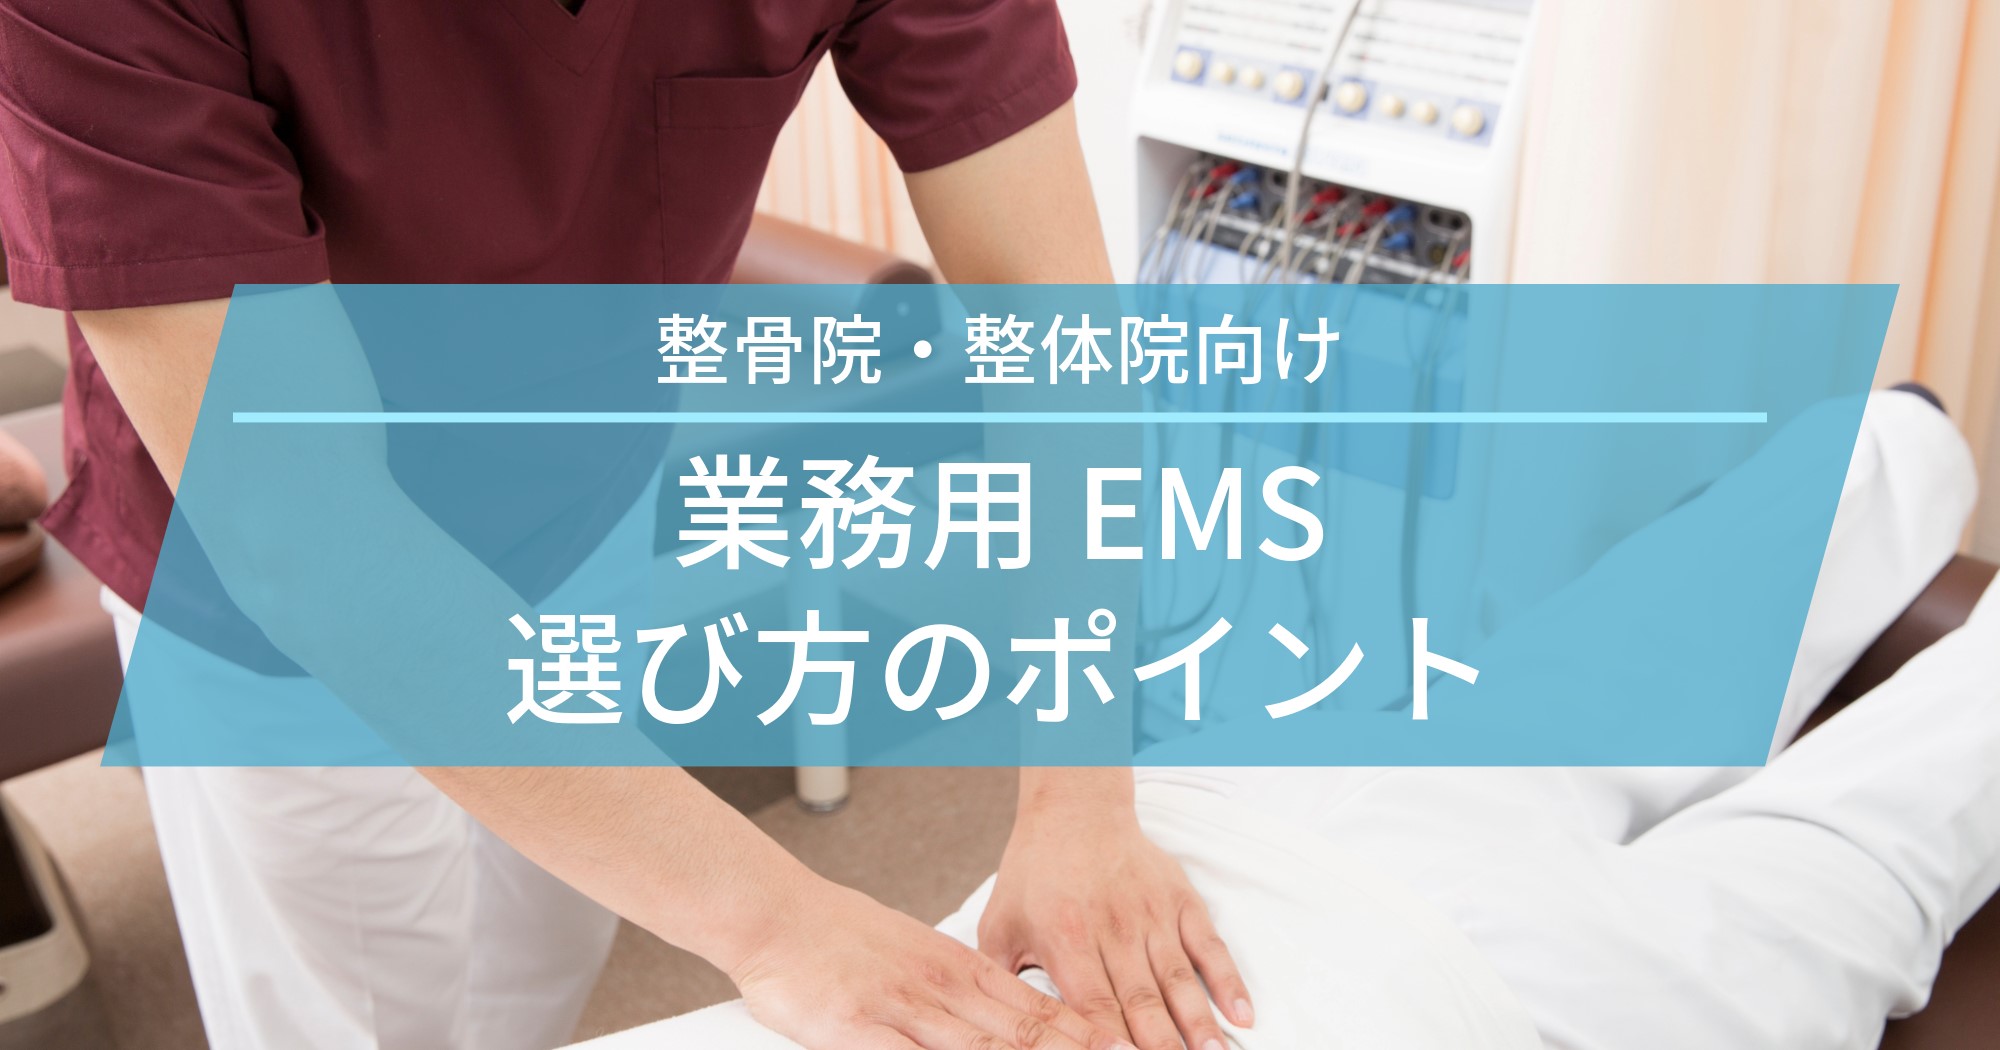 業務用EMSの選び方のポイント【整骨院・整体院向け】